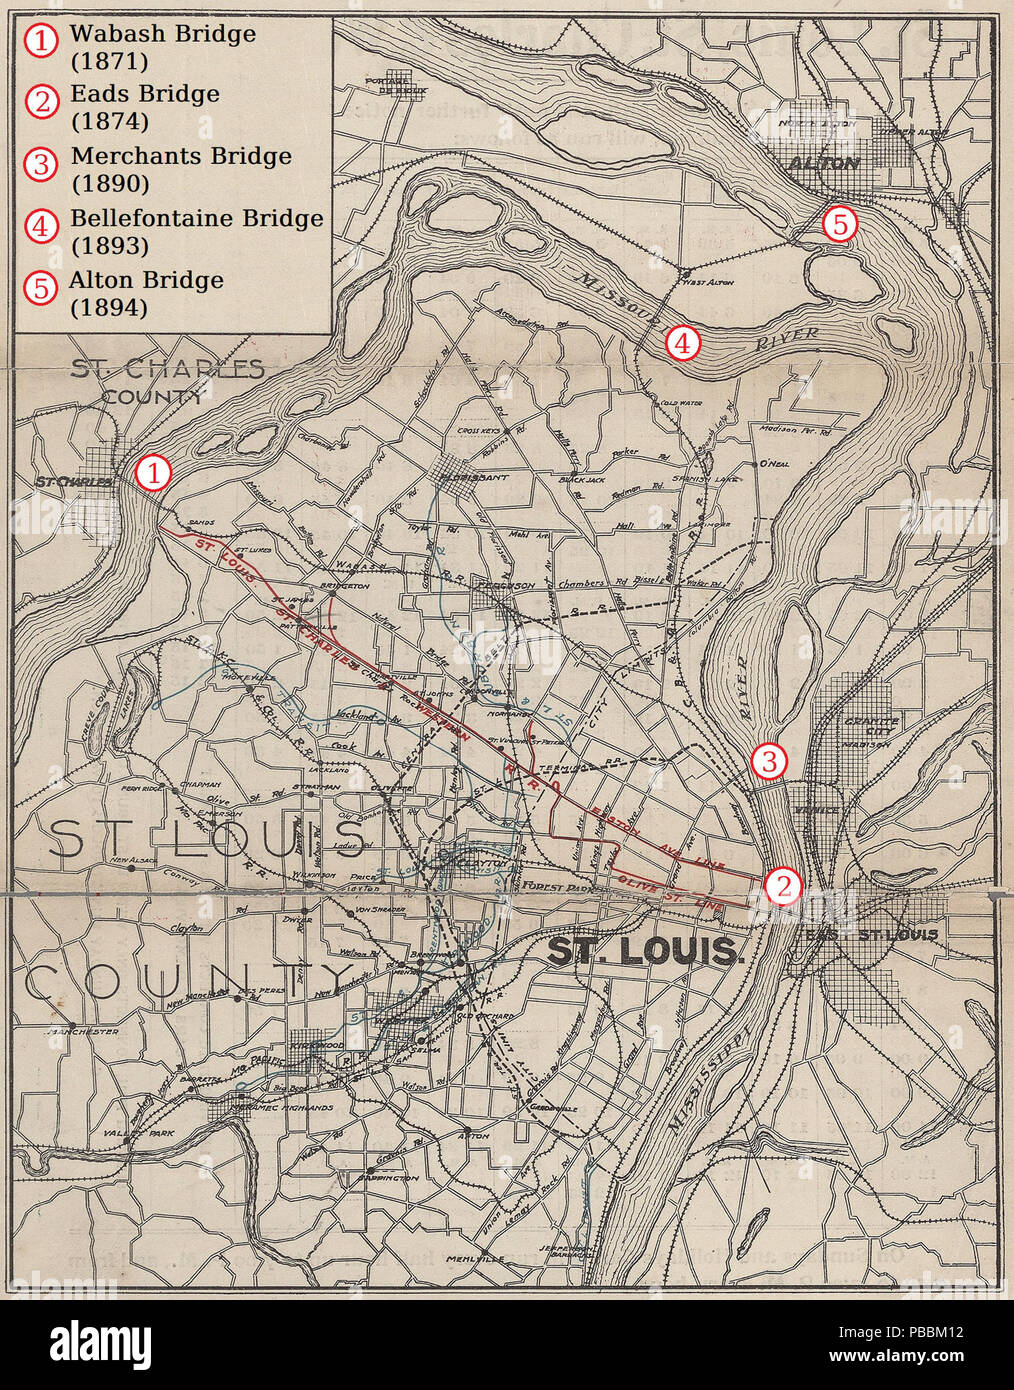 . Englisch: Eisenbahnbrücken in St. Louis und Umgebung 1910, von einer Rampe Karte der St. Louis, St. Charles & Western Railroad angenommen. Original von 1910 1242 Eisenbahnbrücken in St. Louis und Umgebung 1910 Stockfoto